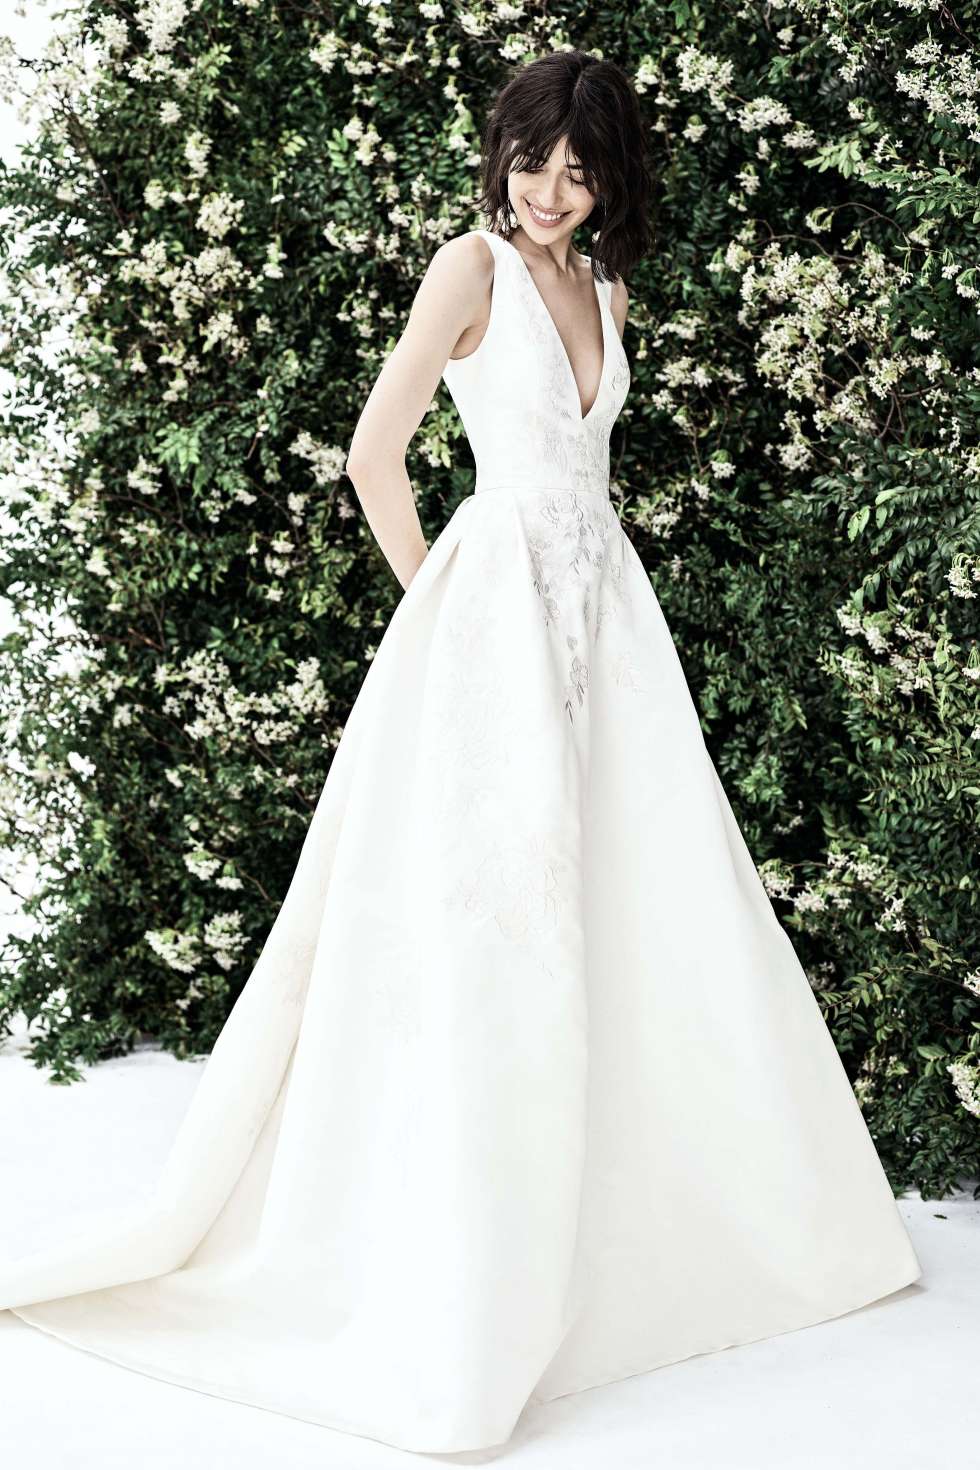 مجموعة كارولينا هيريرا لفساتين زفاف 2020